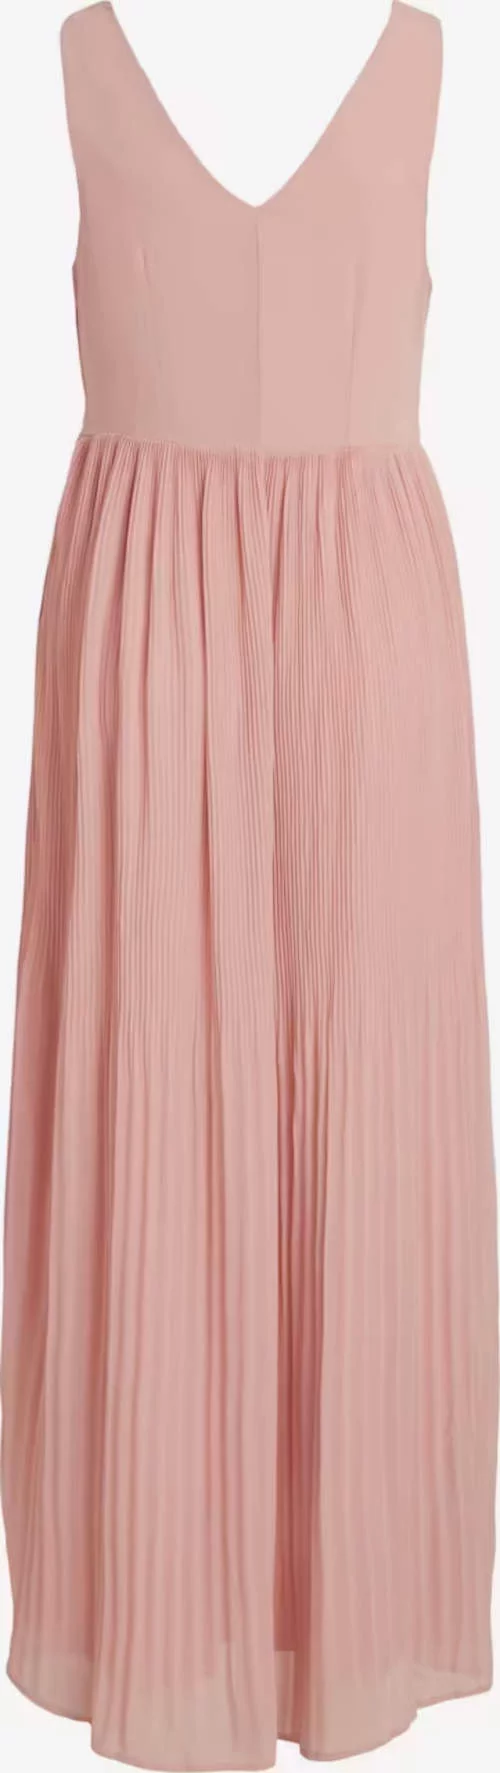 Dlhé ružové šaty pre družičky